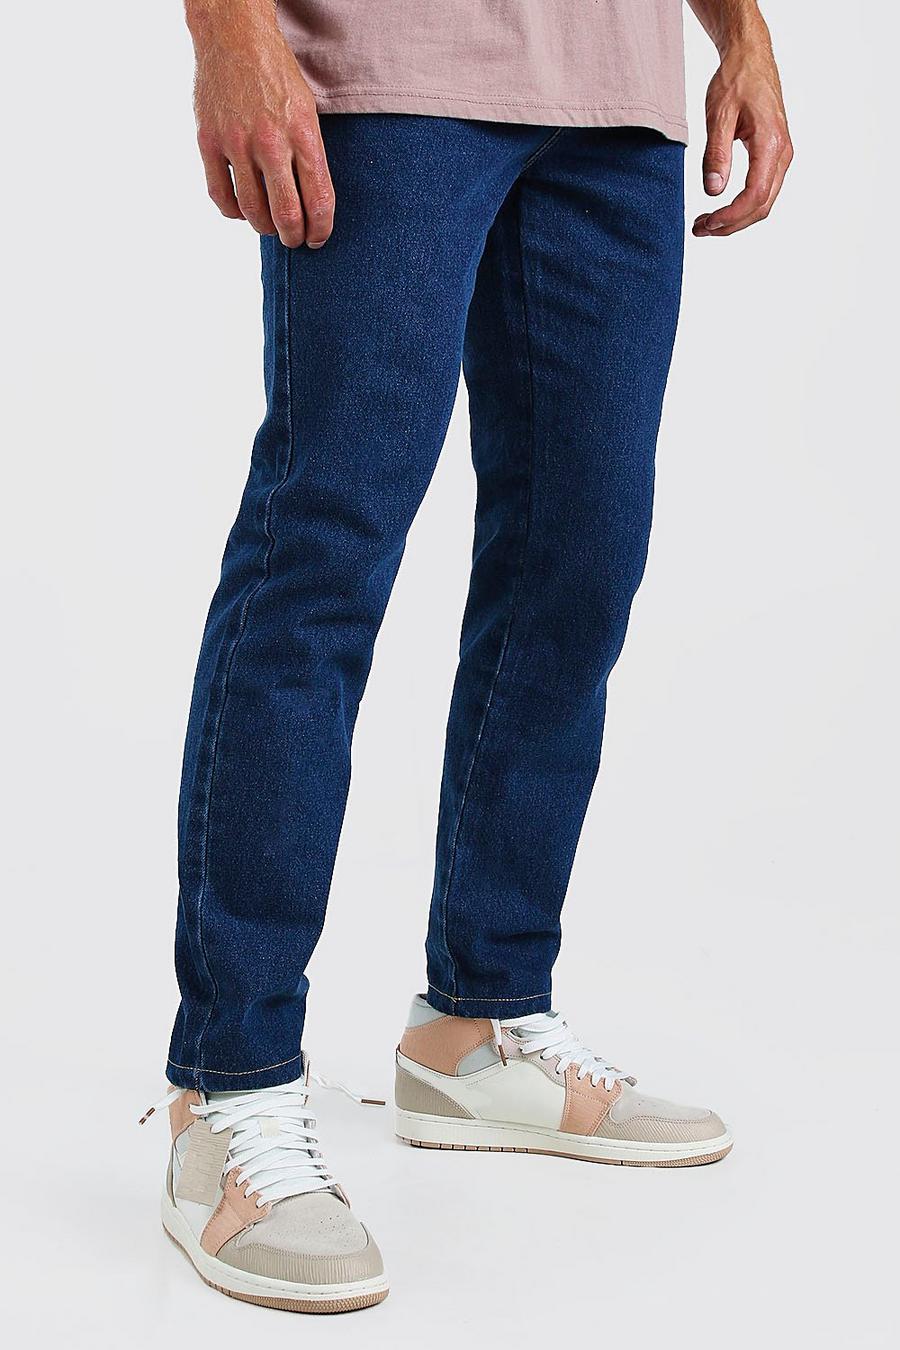 כחול ביניים ג'ינס צר משופשף image number 1